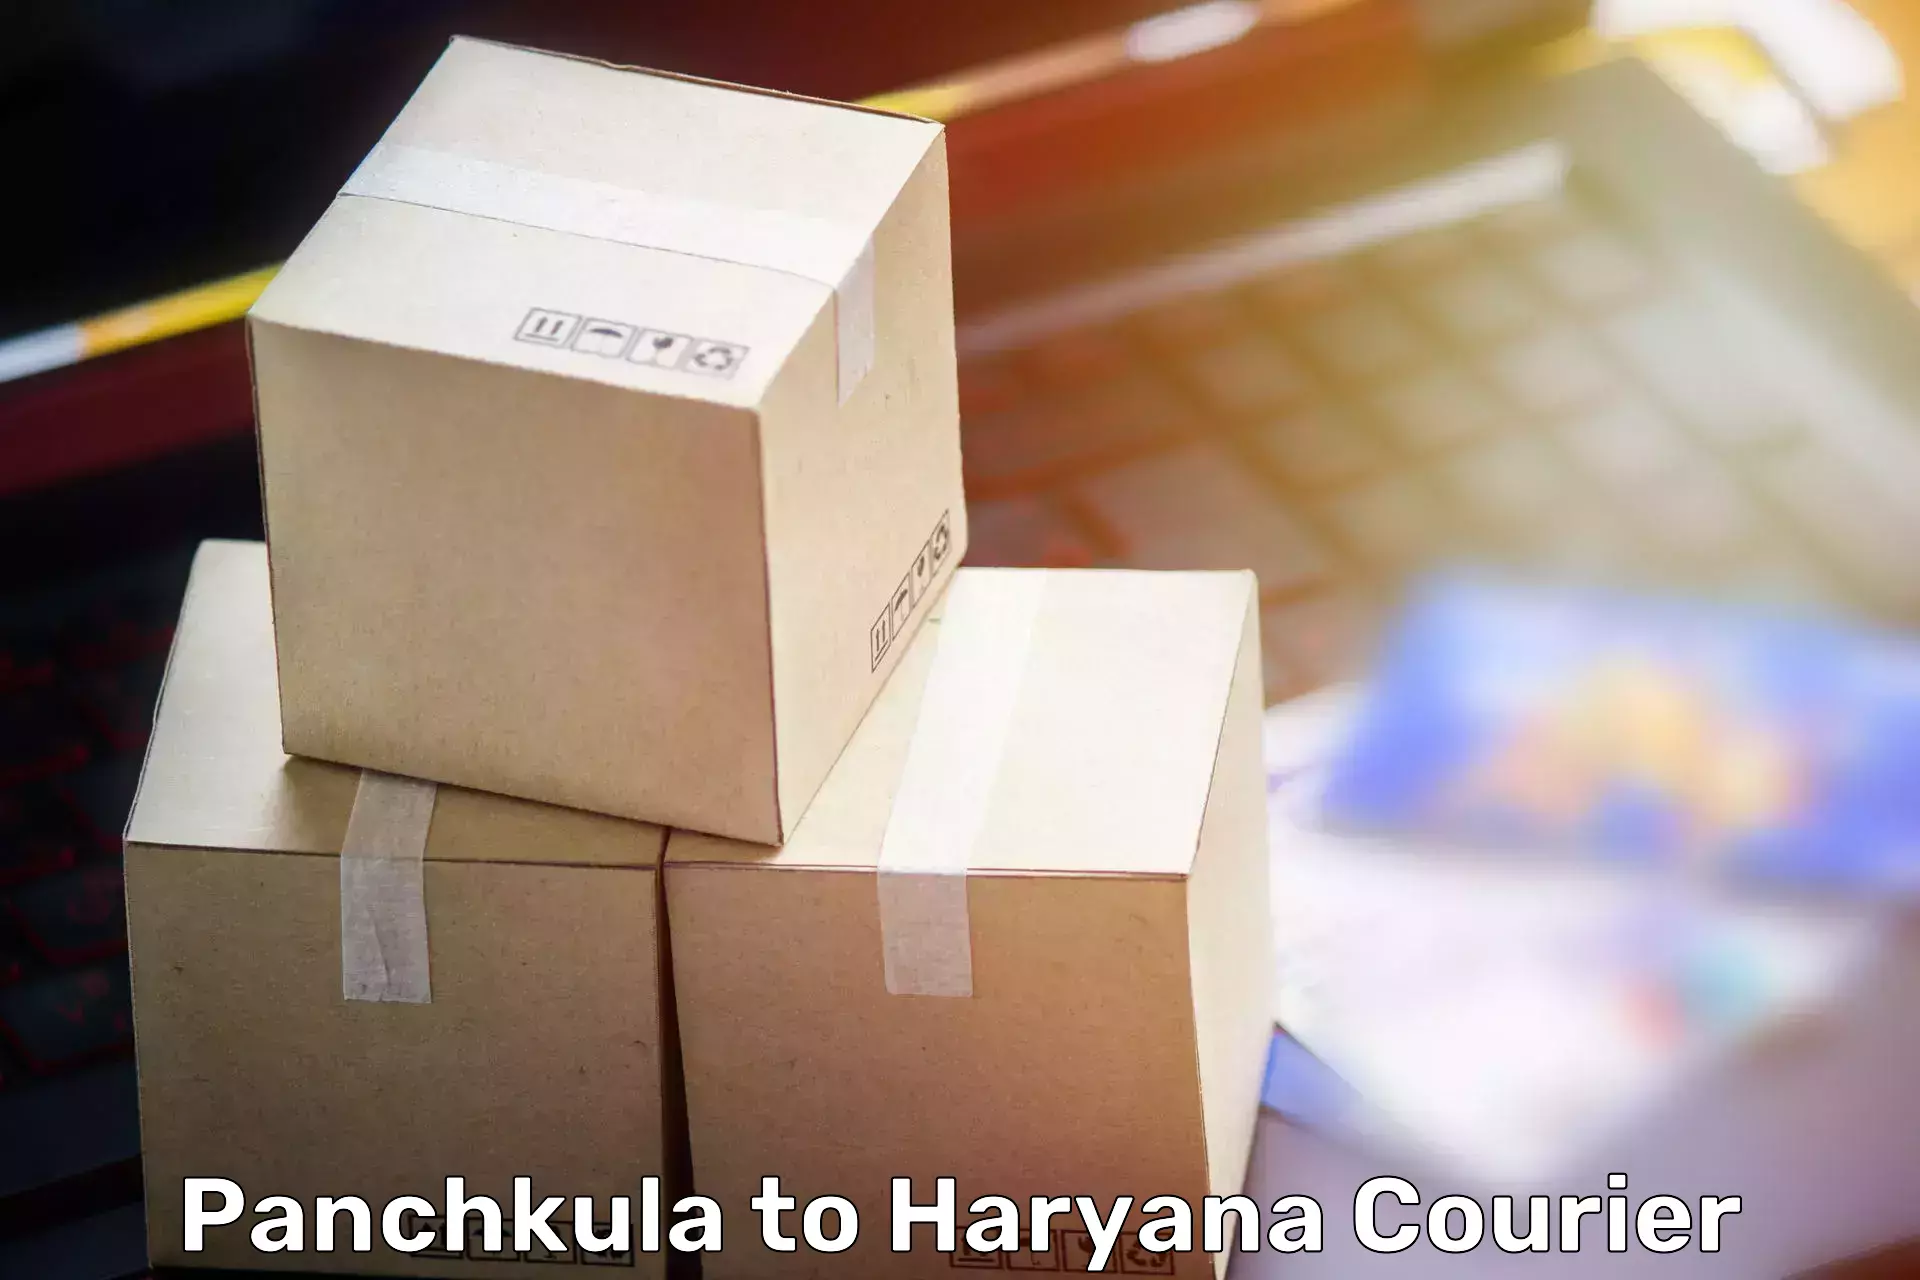 Efficient moving company Panchkula to Panchkula